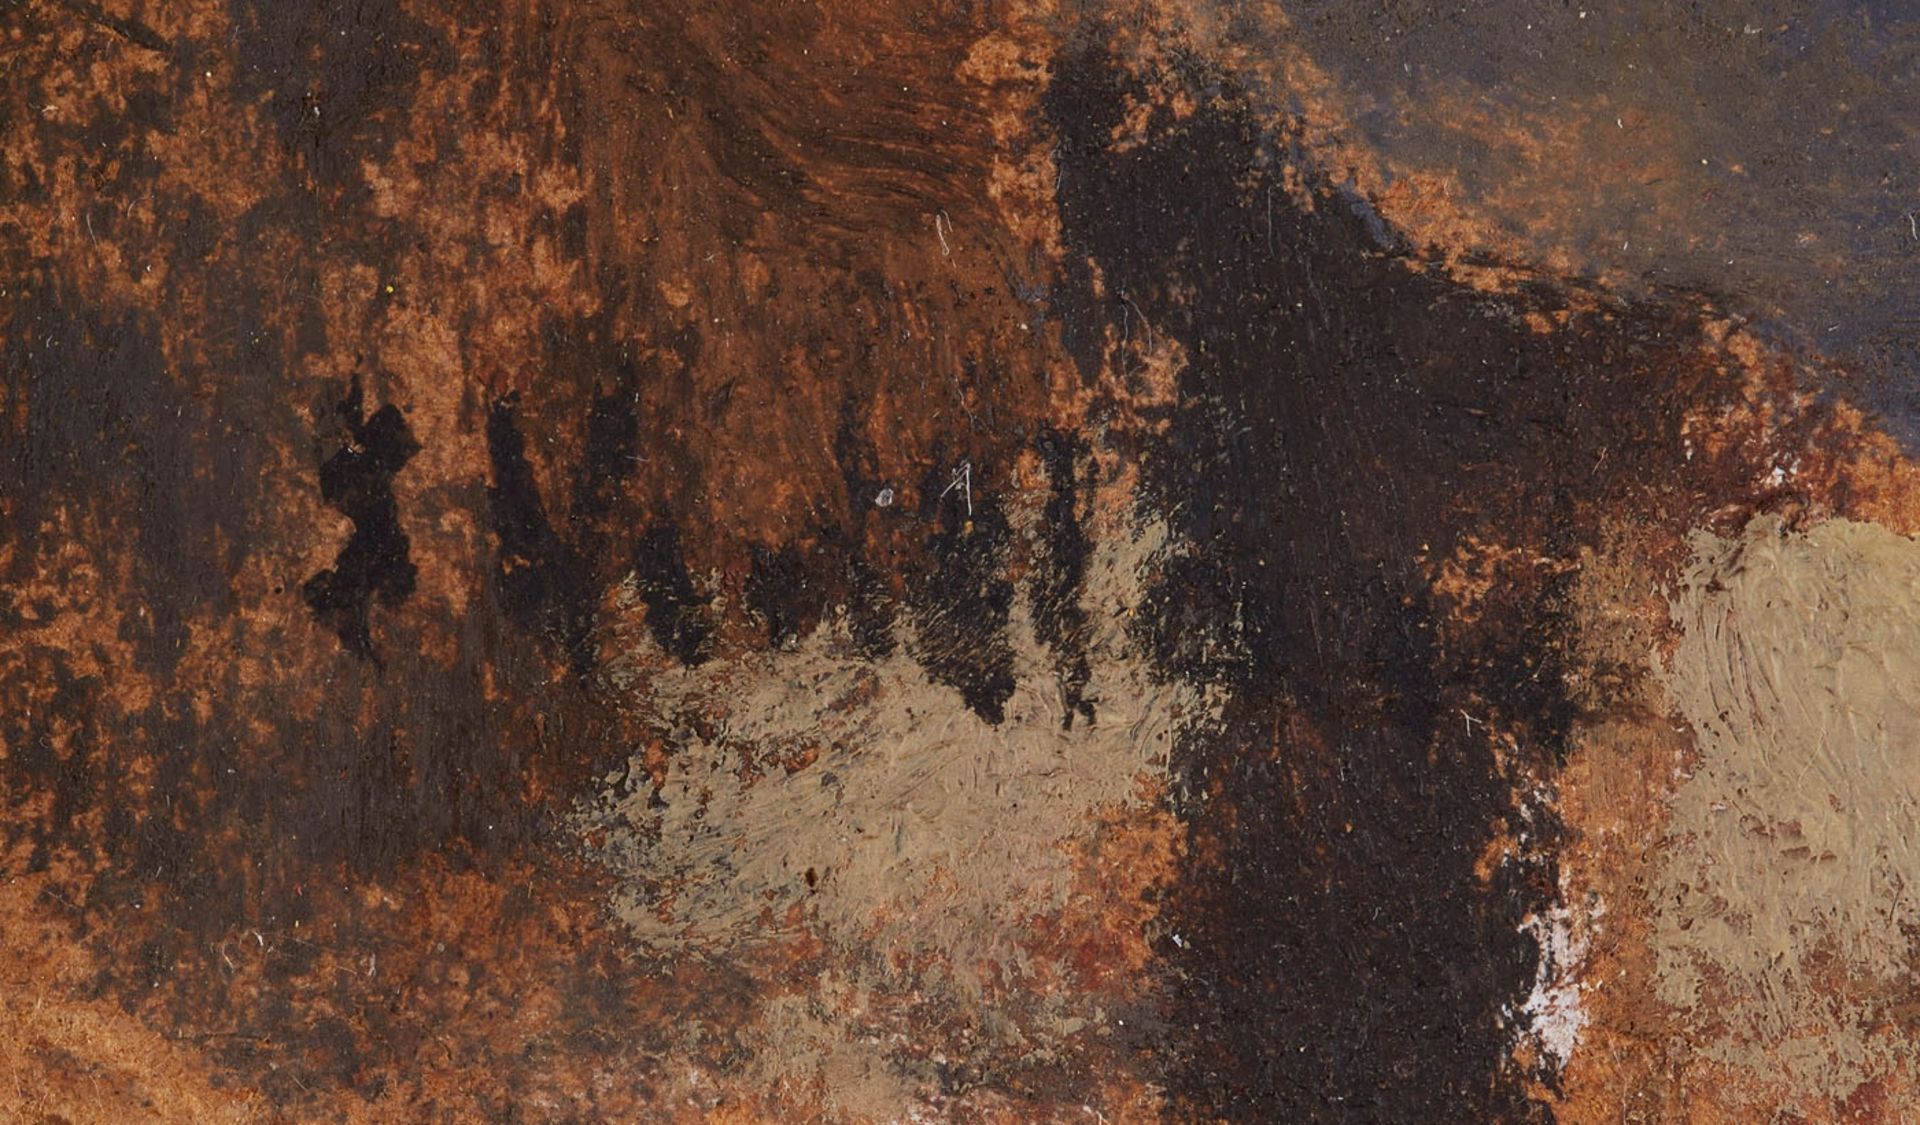 Vuillard, Edouard - Image 49 of 51